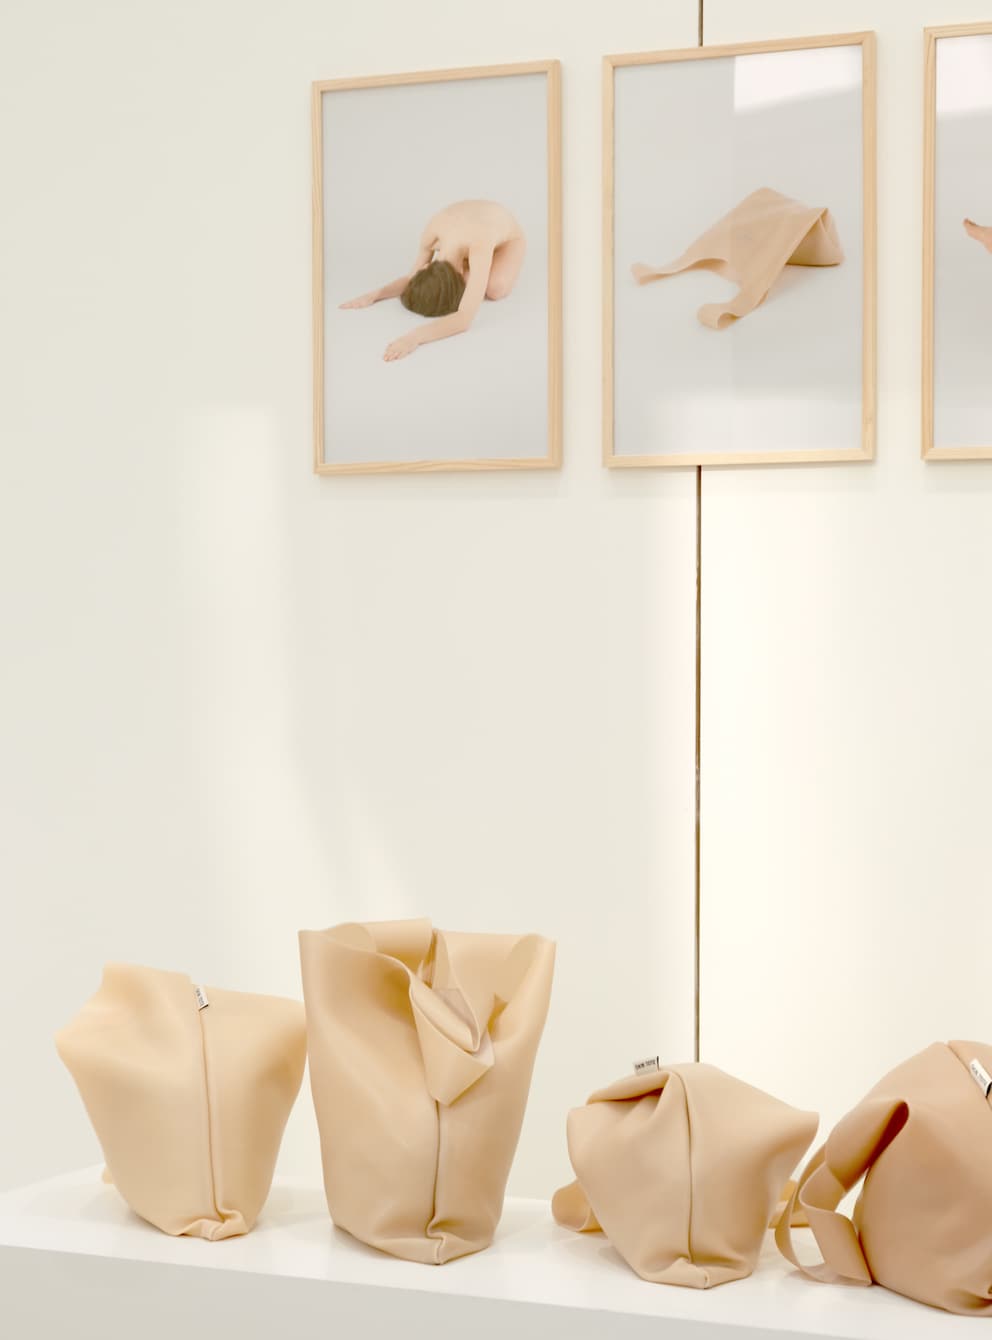 Um Haut bestmöglich darzustellen, hat Yuma Kano für ihre Taschen Silikon gewählt.